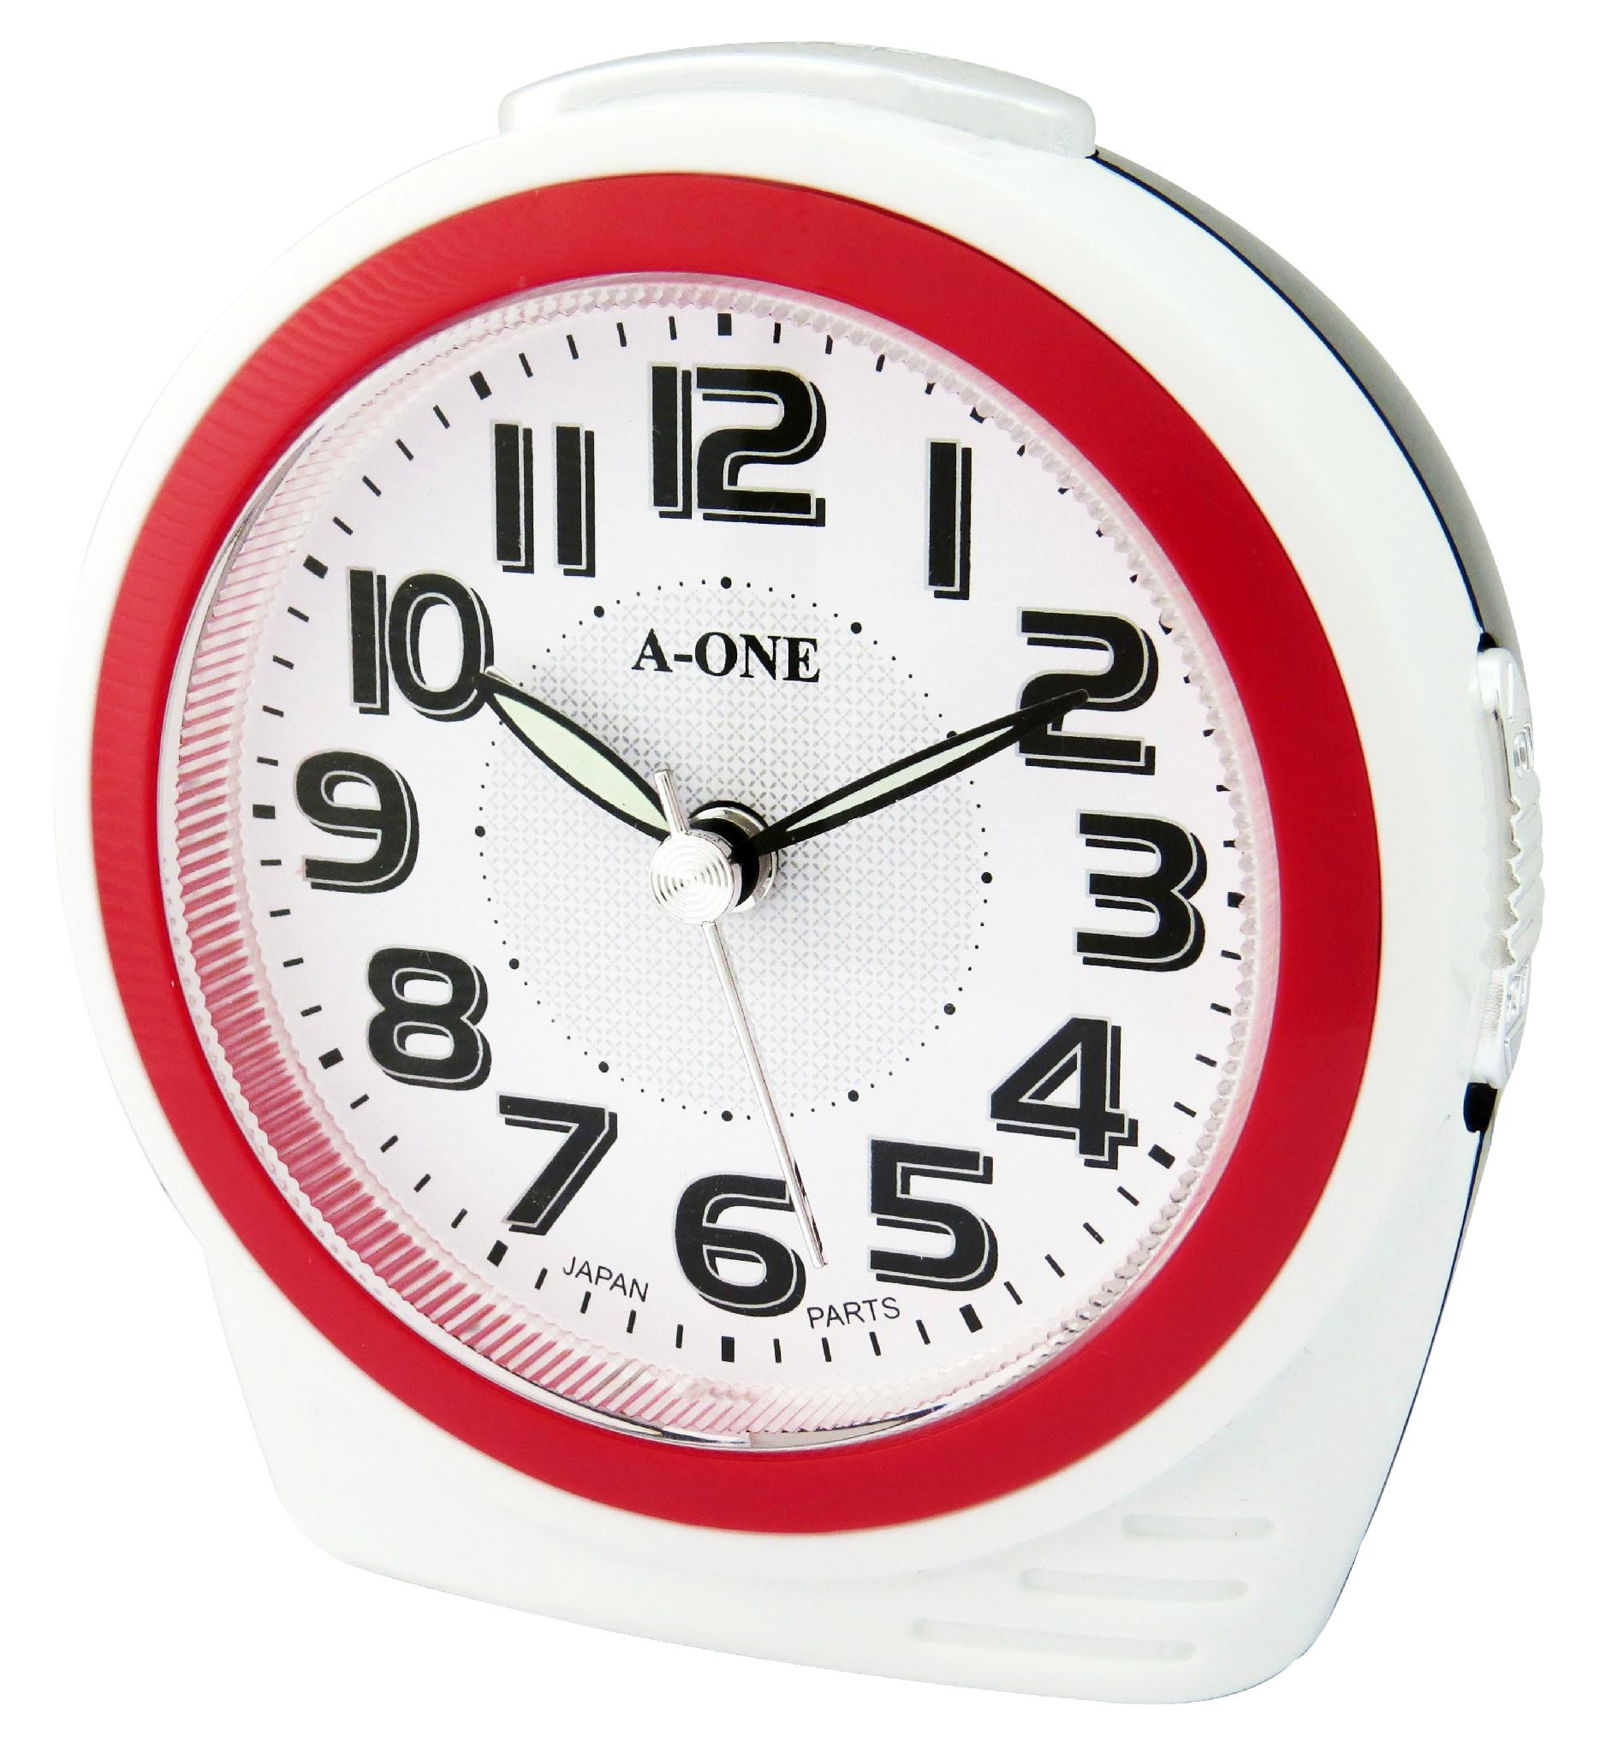 TG-0164 Colorful Bibi Ring Alarm Clock 4